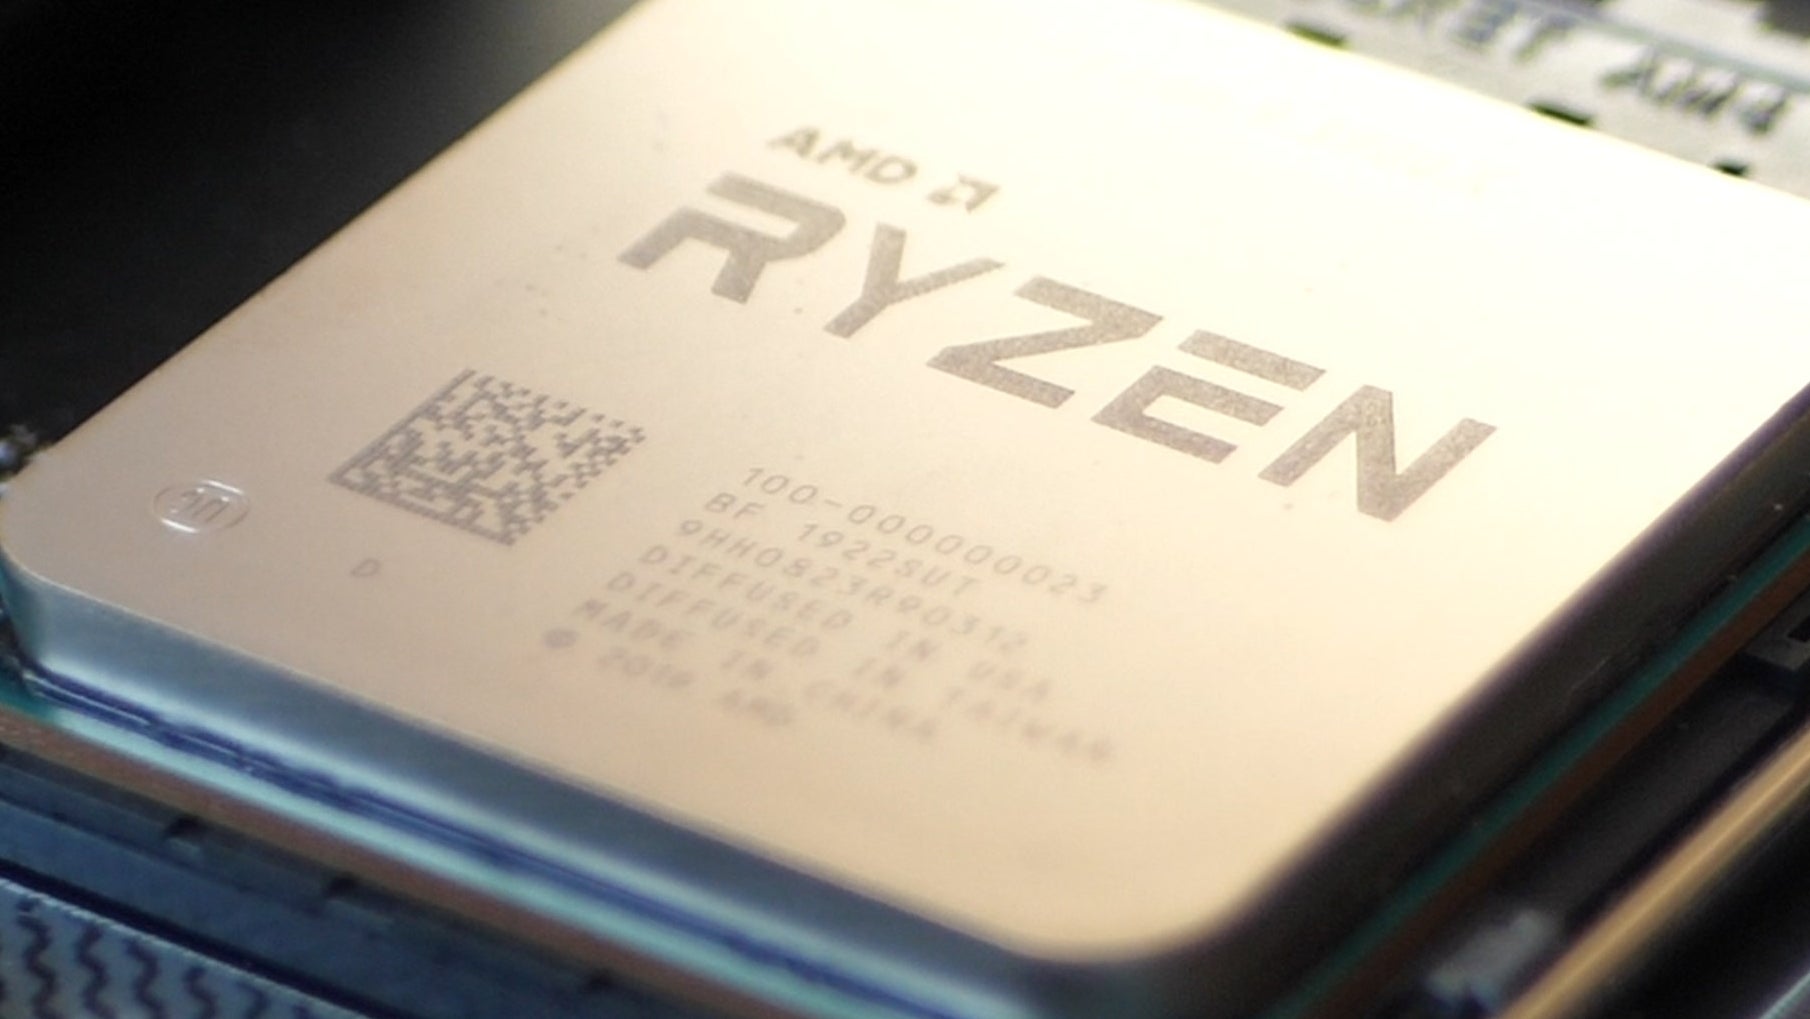 AMD Ryzen 3900X vs Core i9 9900K review